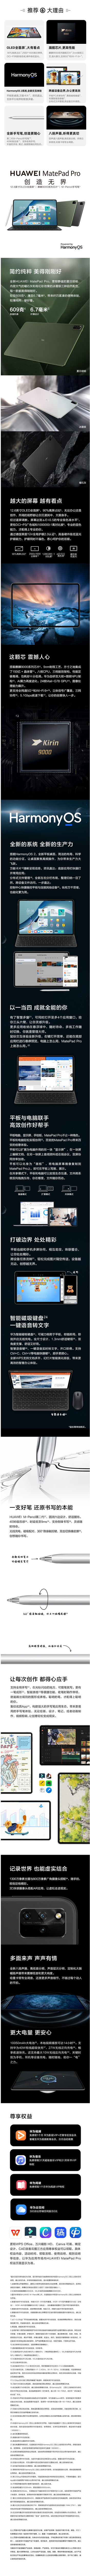 FireShot Capture 222 - 【华为MatePad Pro】华为HUAWEI MatePad Pro 12.6 2021 鸿蒙HarmonyOS麒麟9000E OLED_ - item.jd.com.png